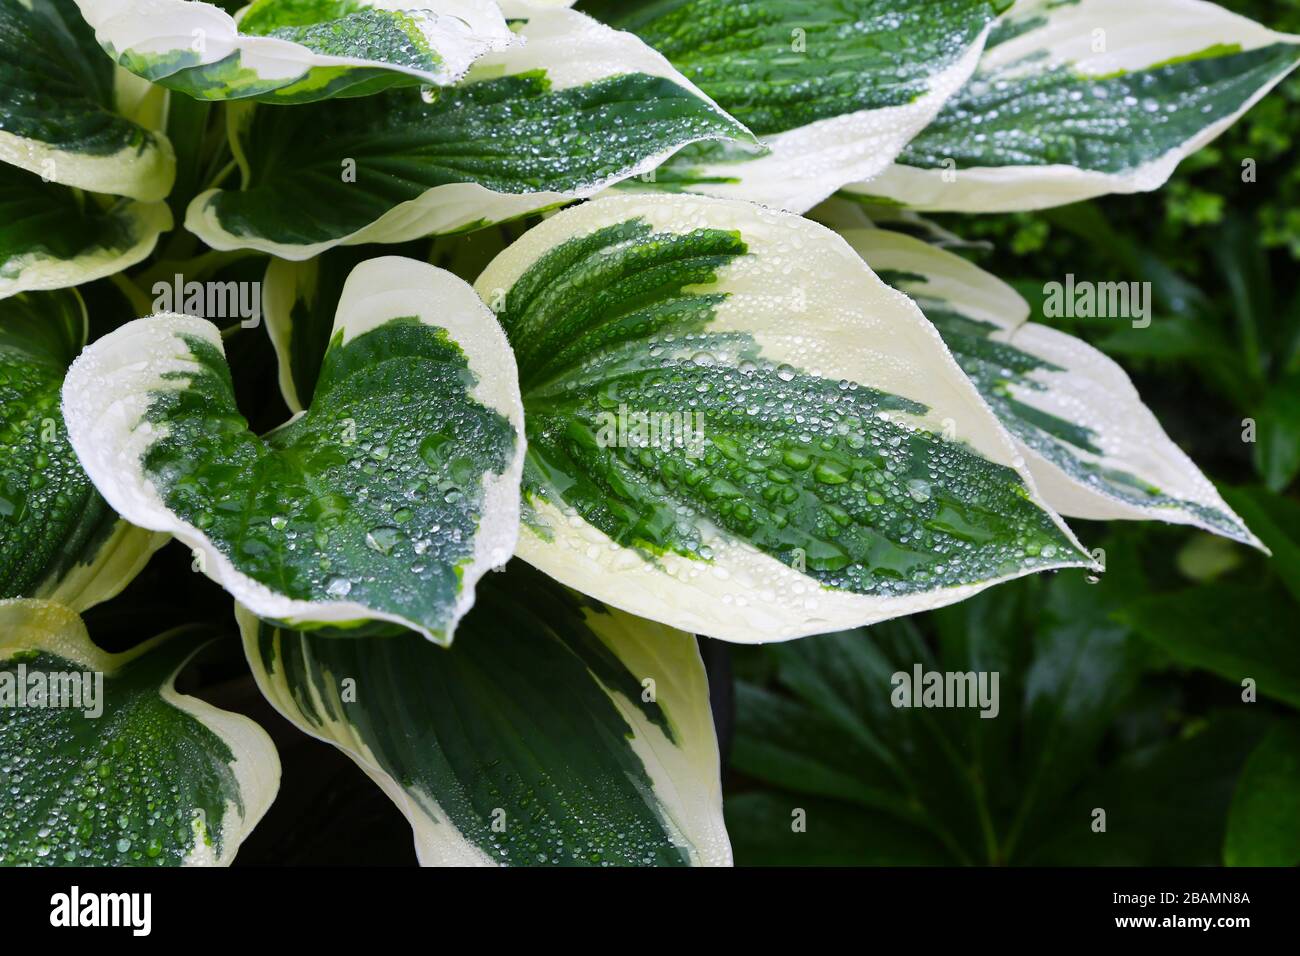 Foglie variegate immagini e fotografie stock ad alta risoluzione - Alamy